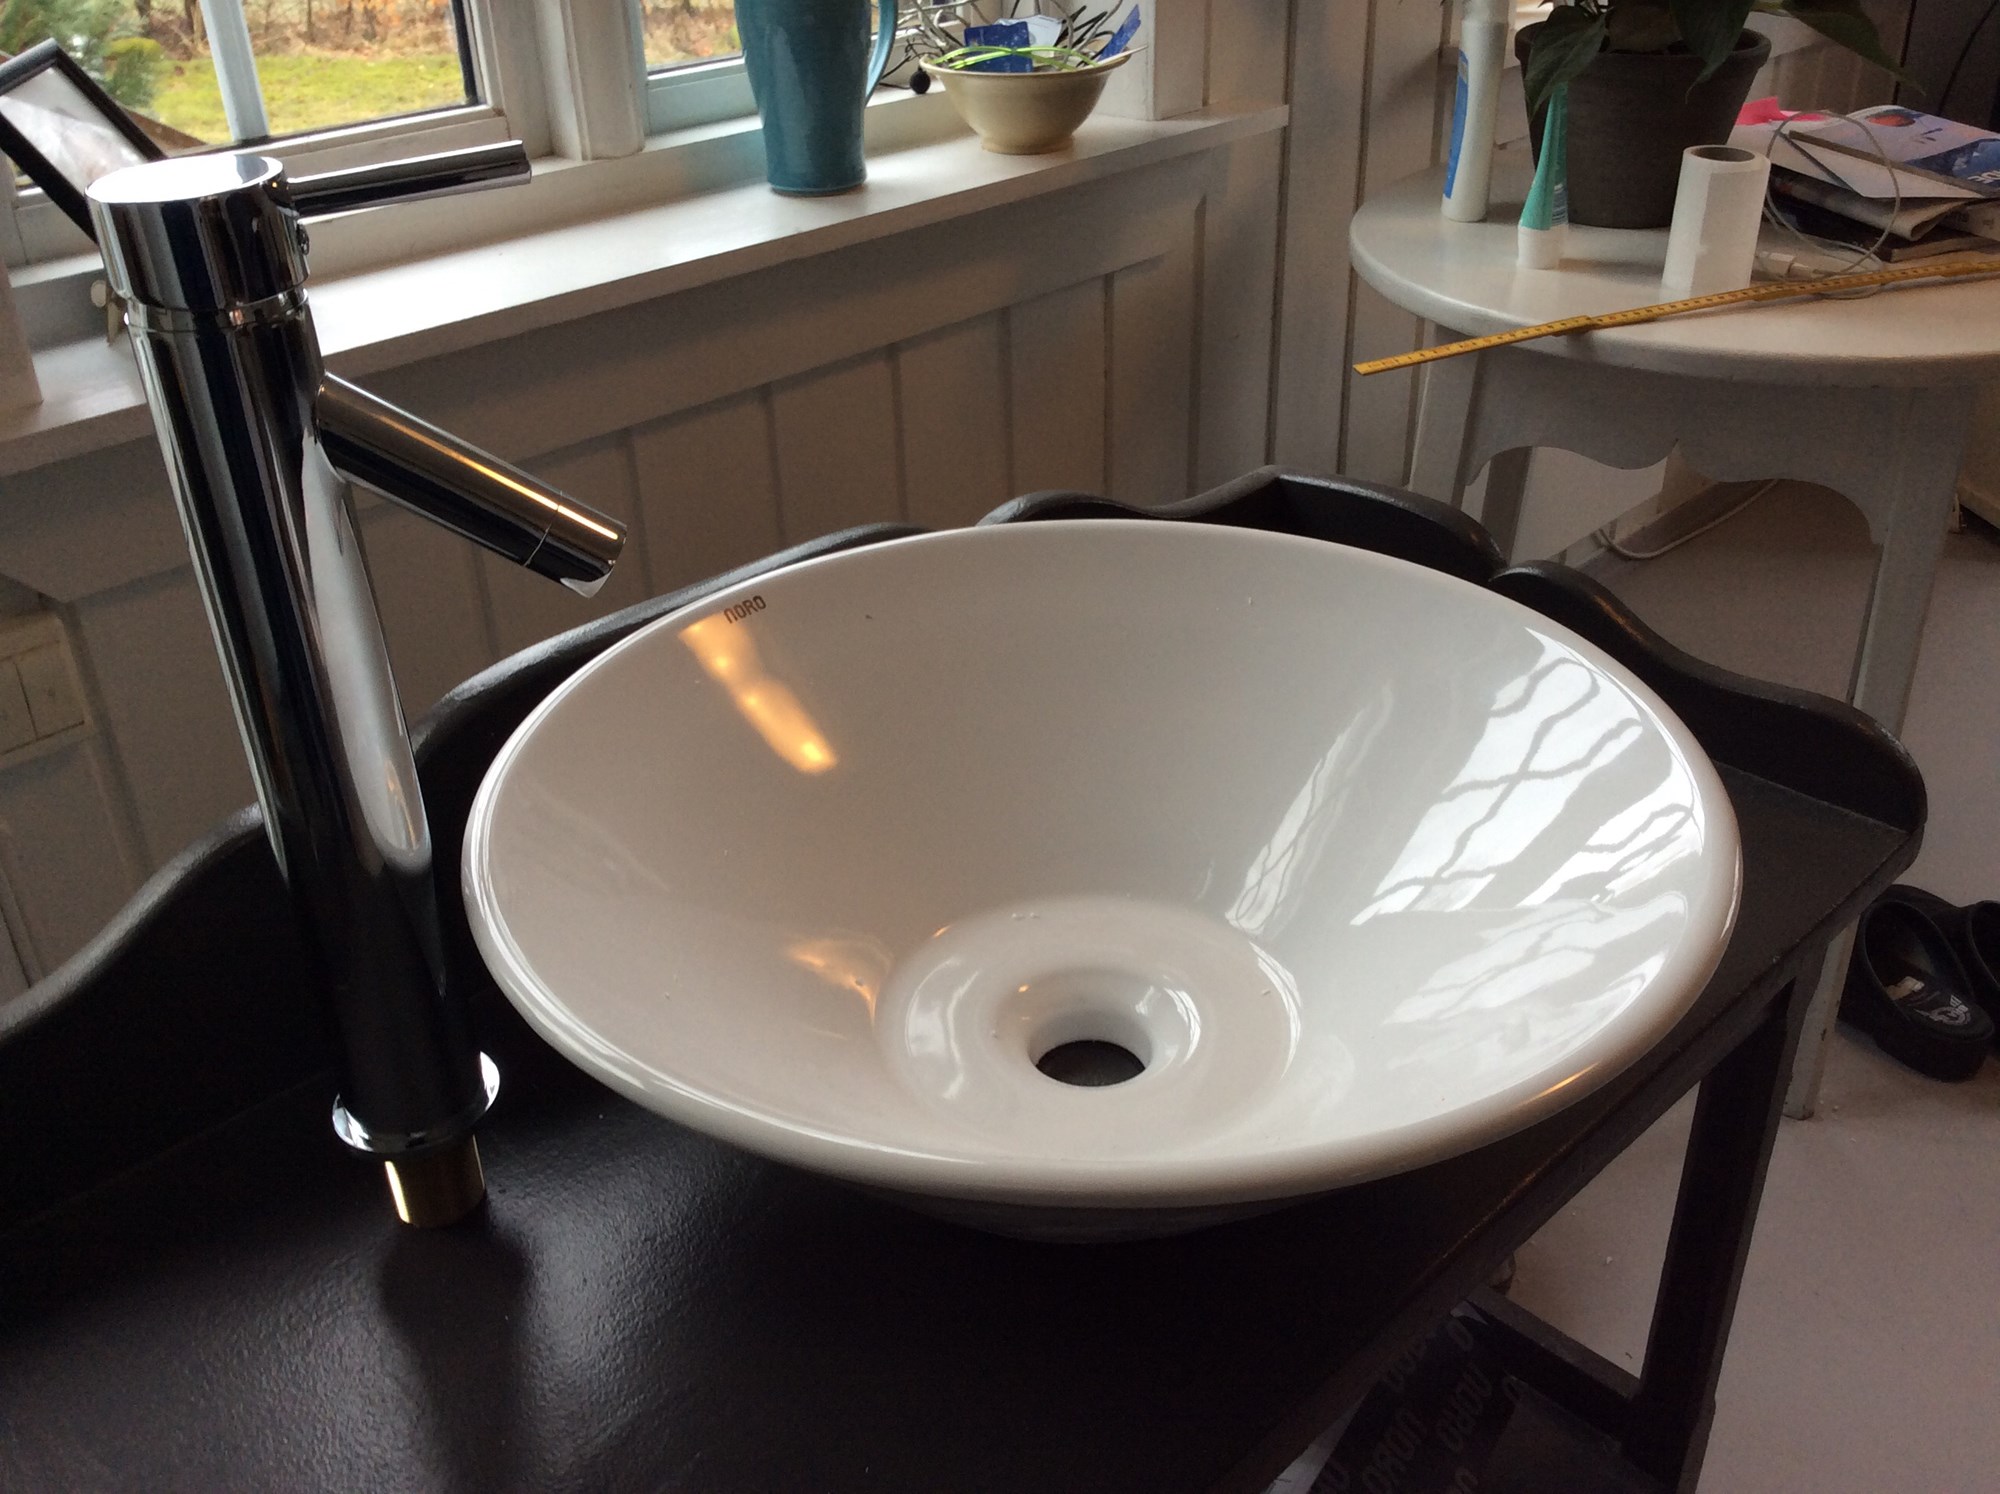 Montering av høy kran til rund vask - image.jpg - gulla